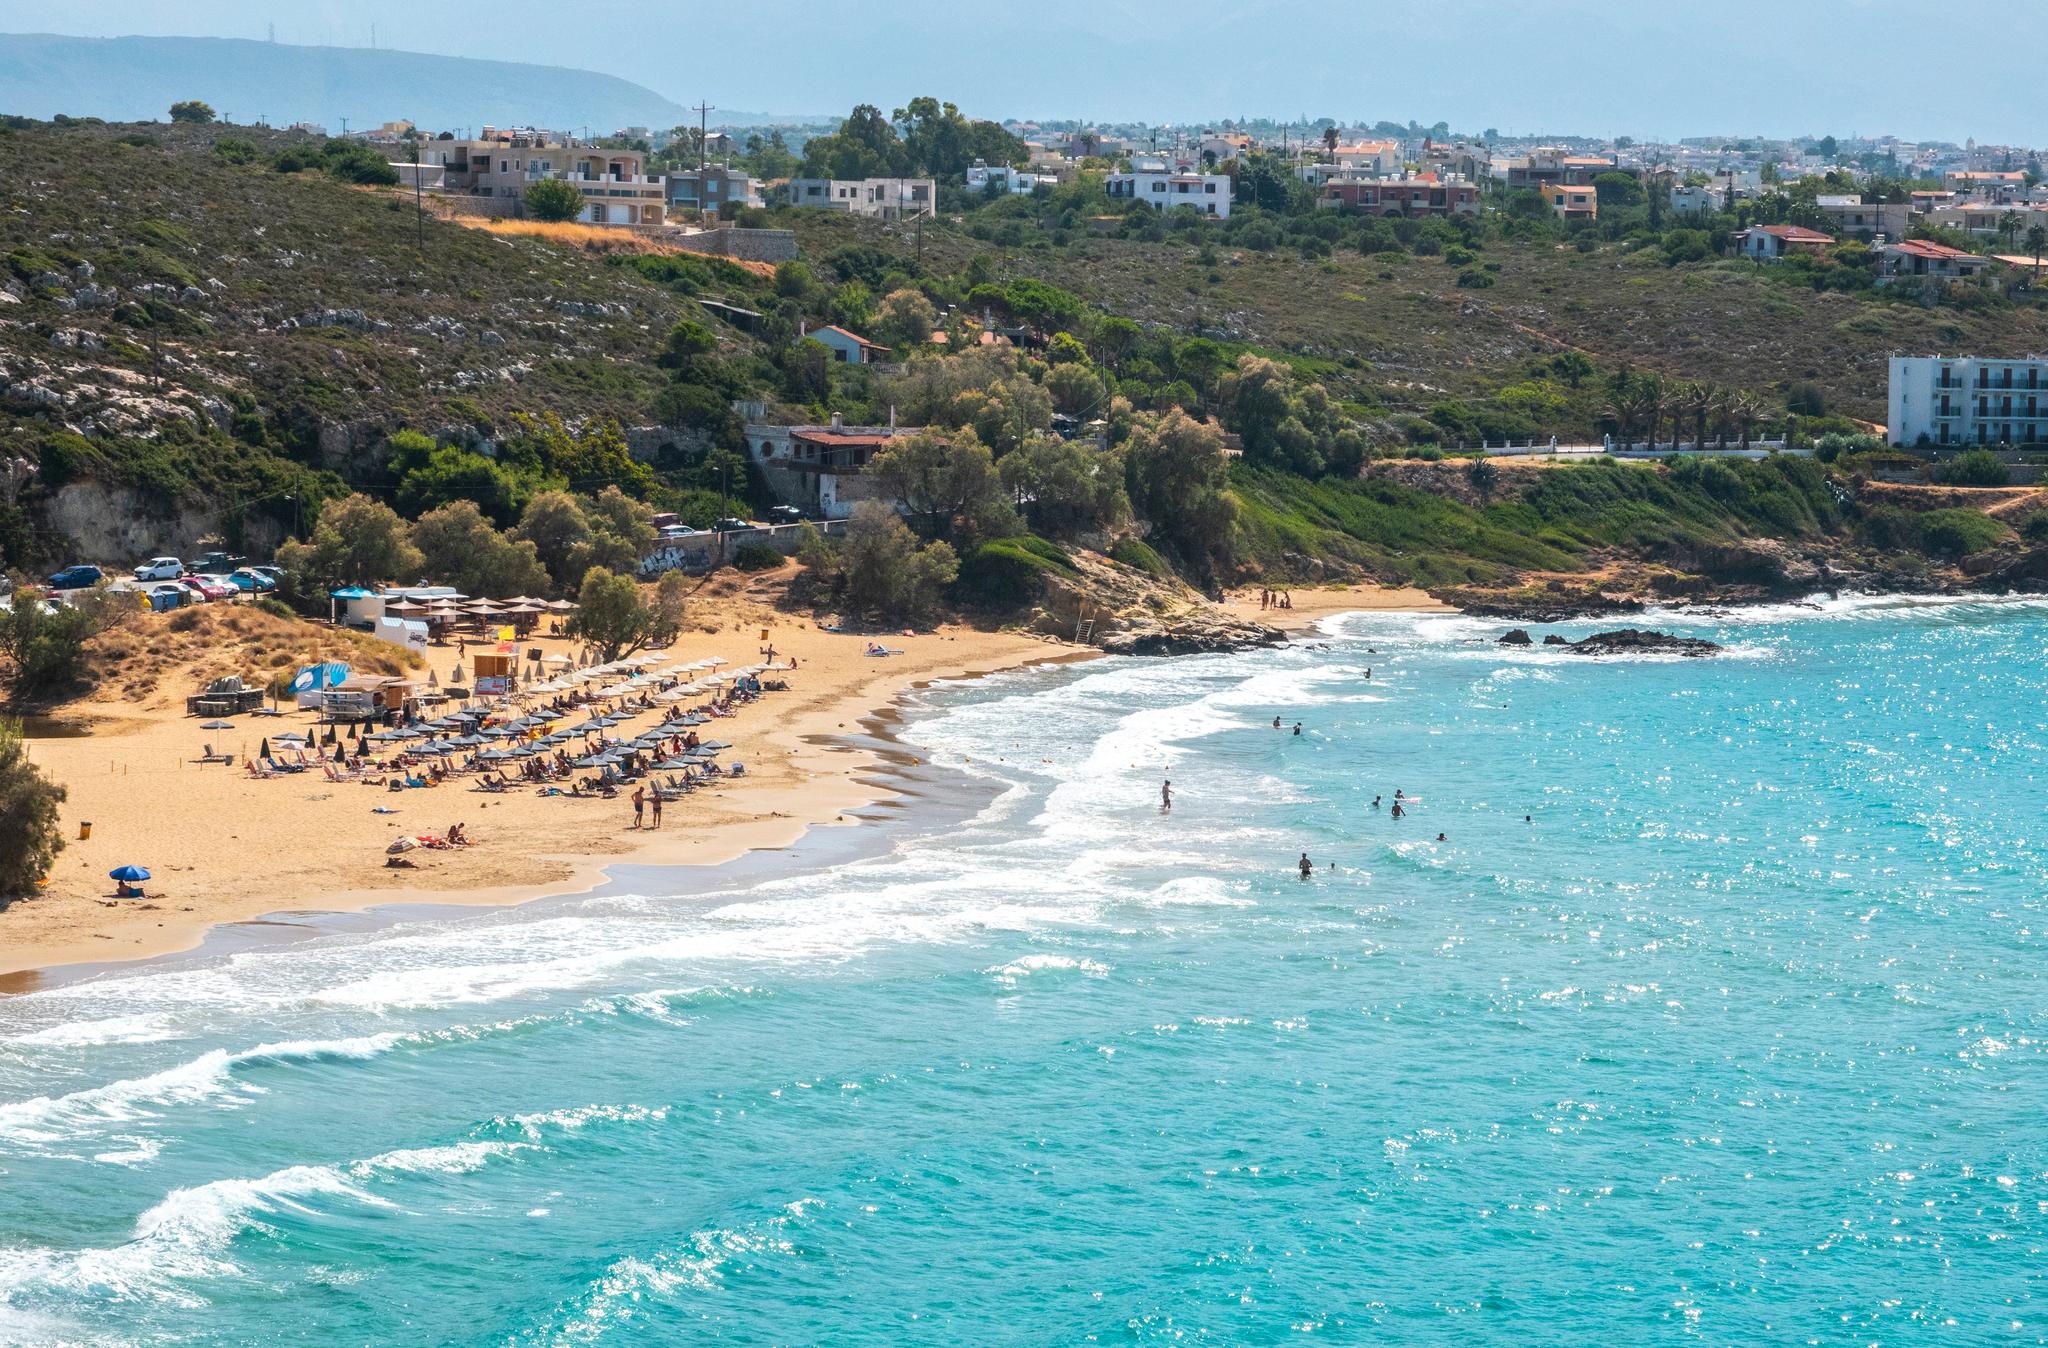 Blått hav og rolige bølger over en ikke altfor overfylt strand er feriedrømmen for mange. Her representert ved stranden Kalathas ved Chania på Kreta i Hellas.